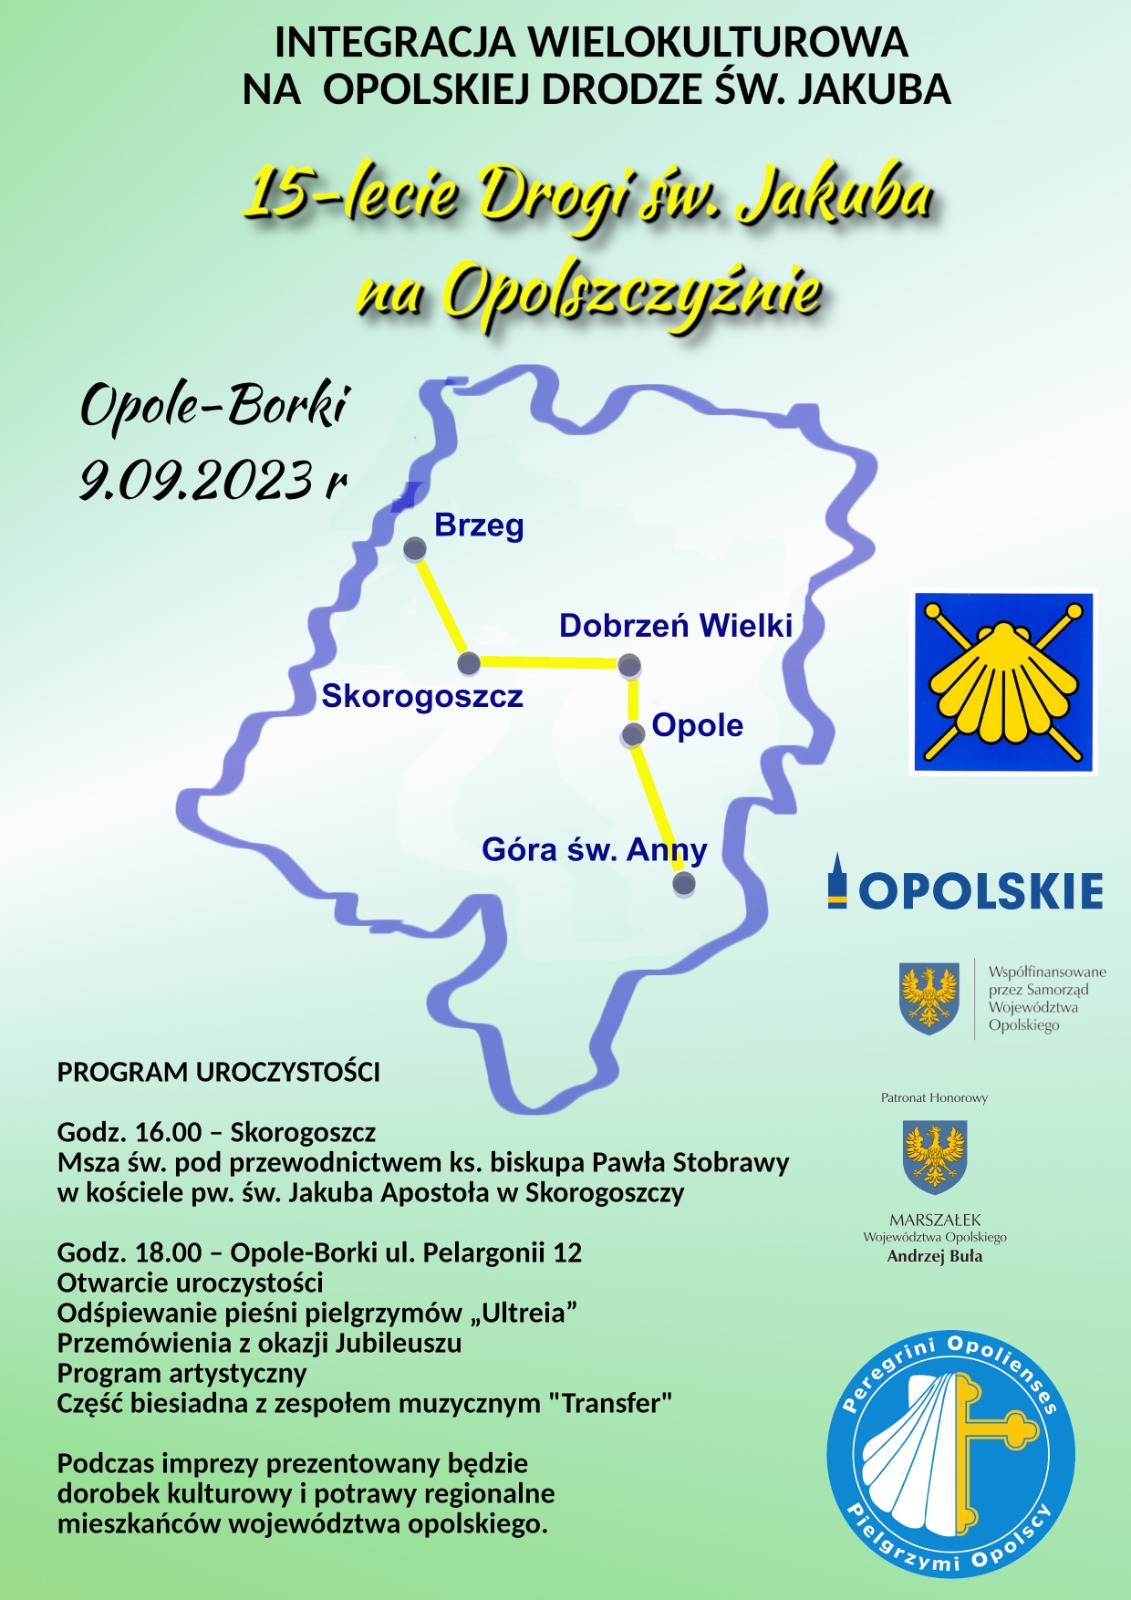 9 września 15-lecie opolskiej drogi św. Jakuba. Obchody w Opolu-Borkach i Skorogoszczy